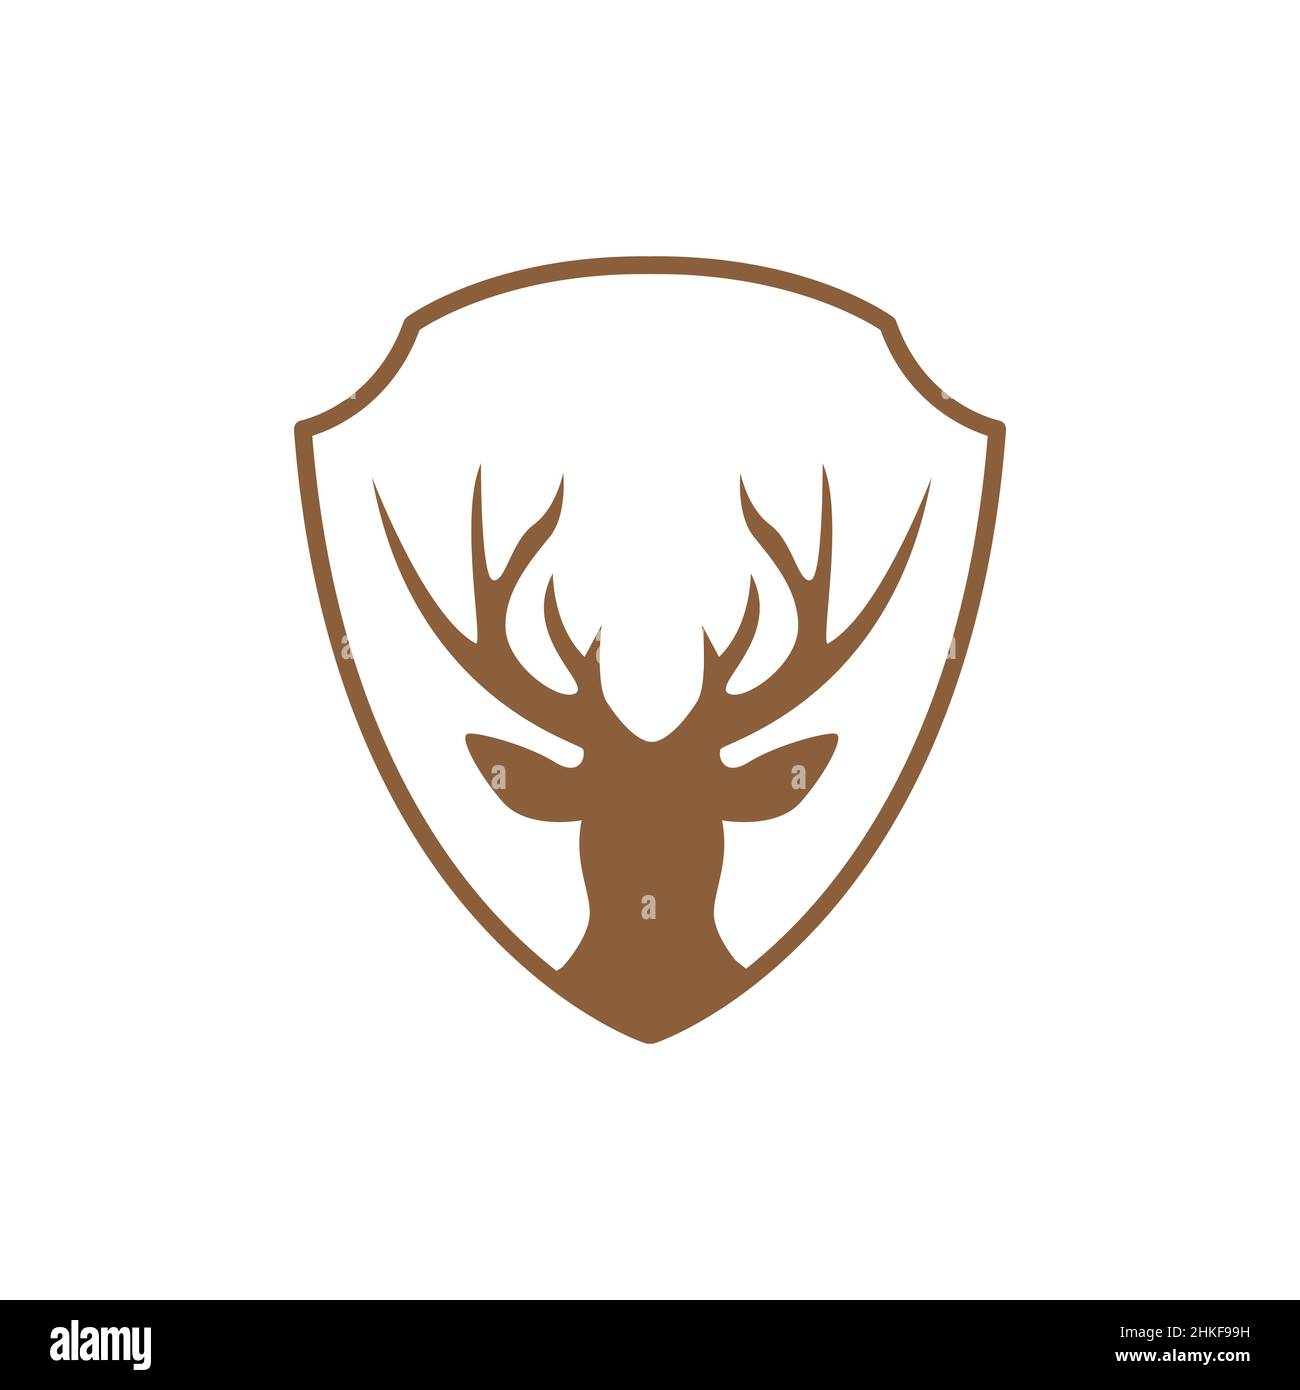 Deer antler logo Royalty Free Vector Image - VectorStock